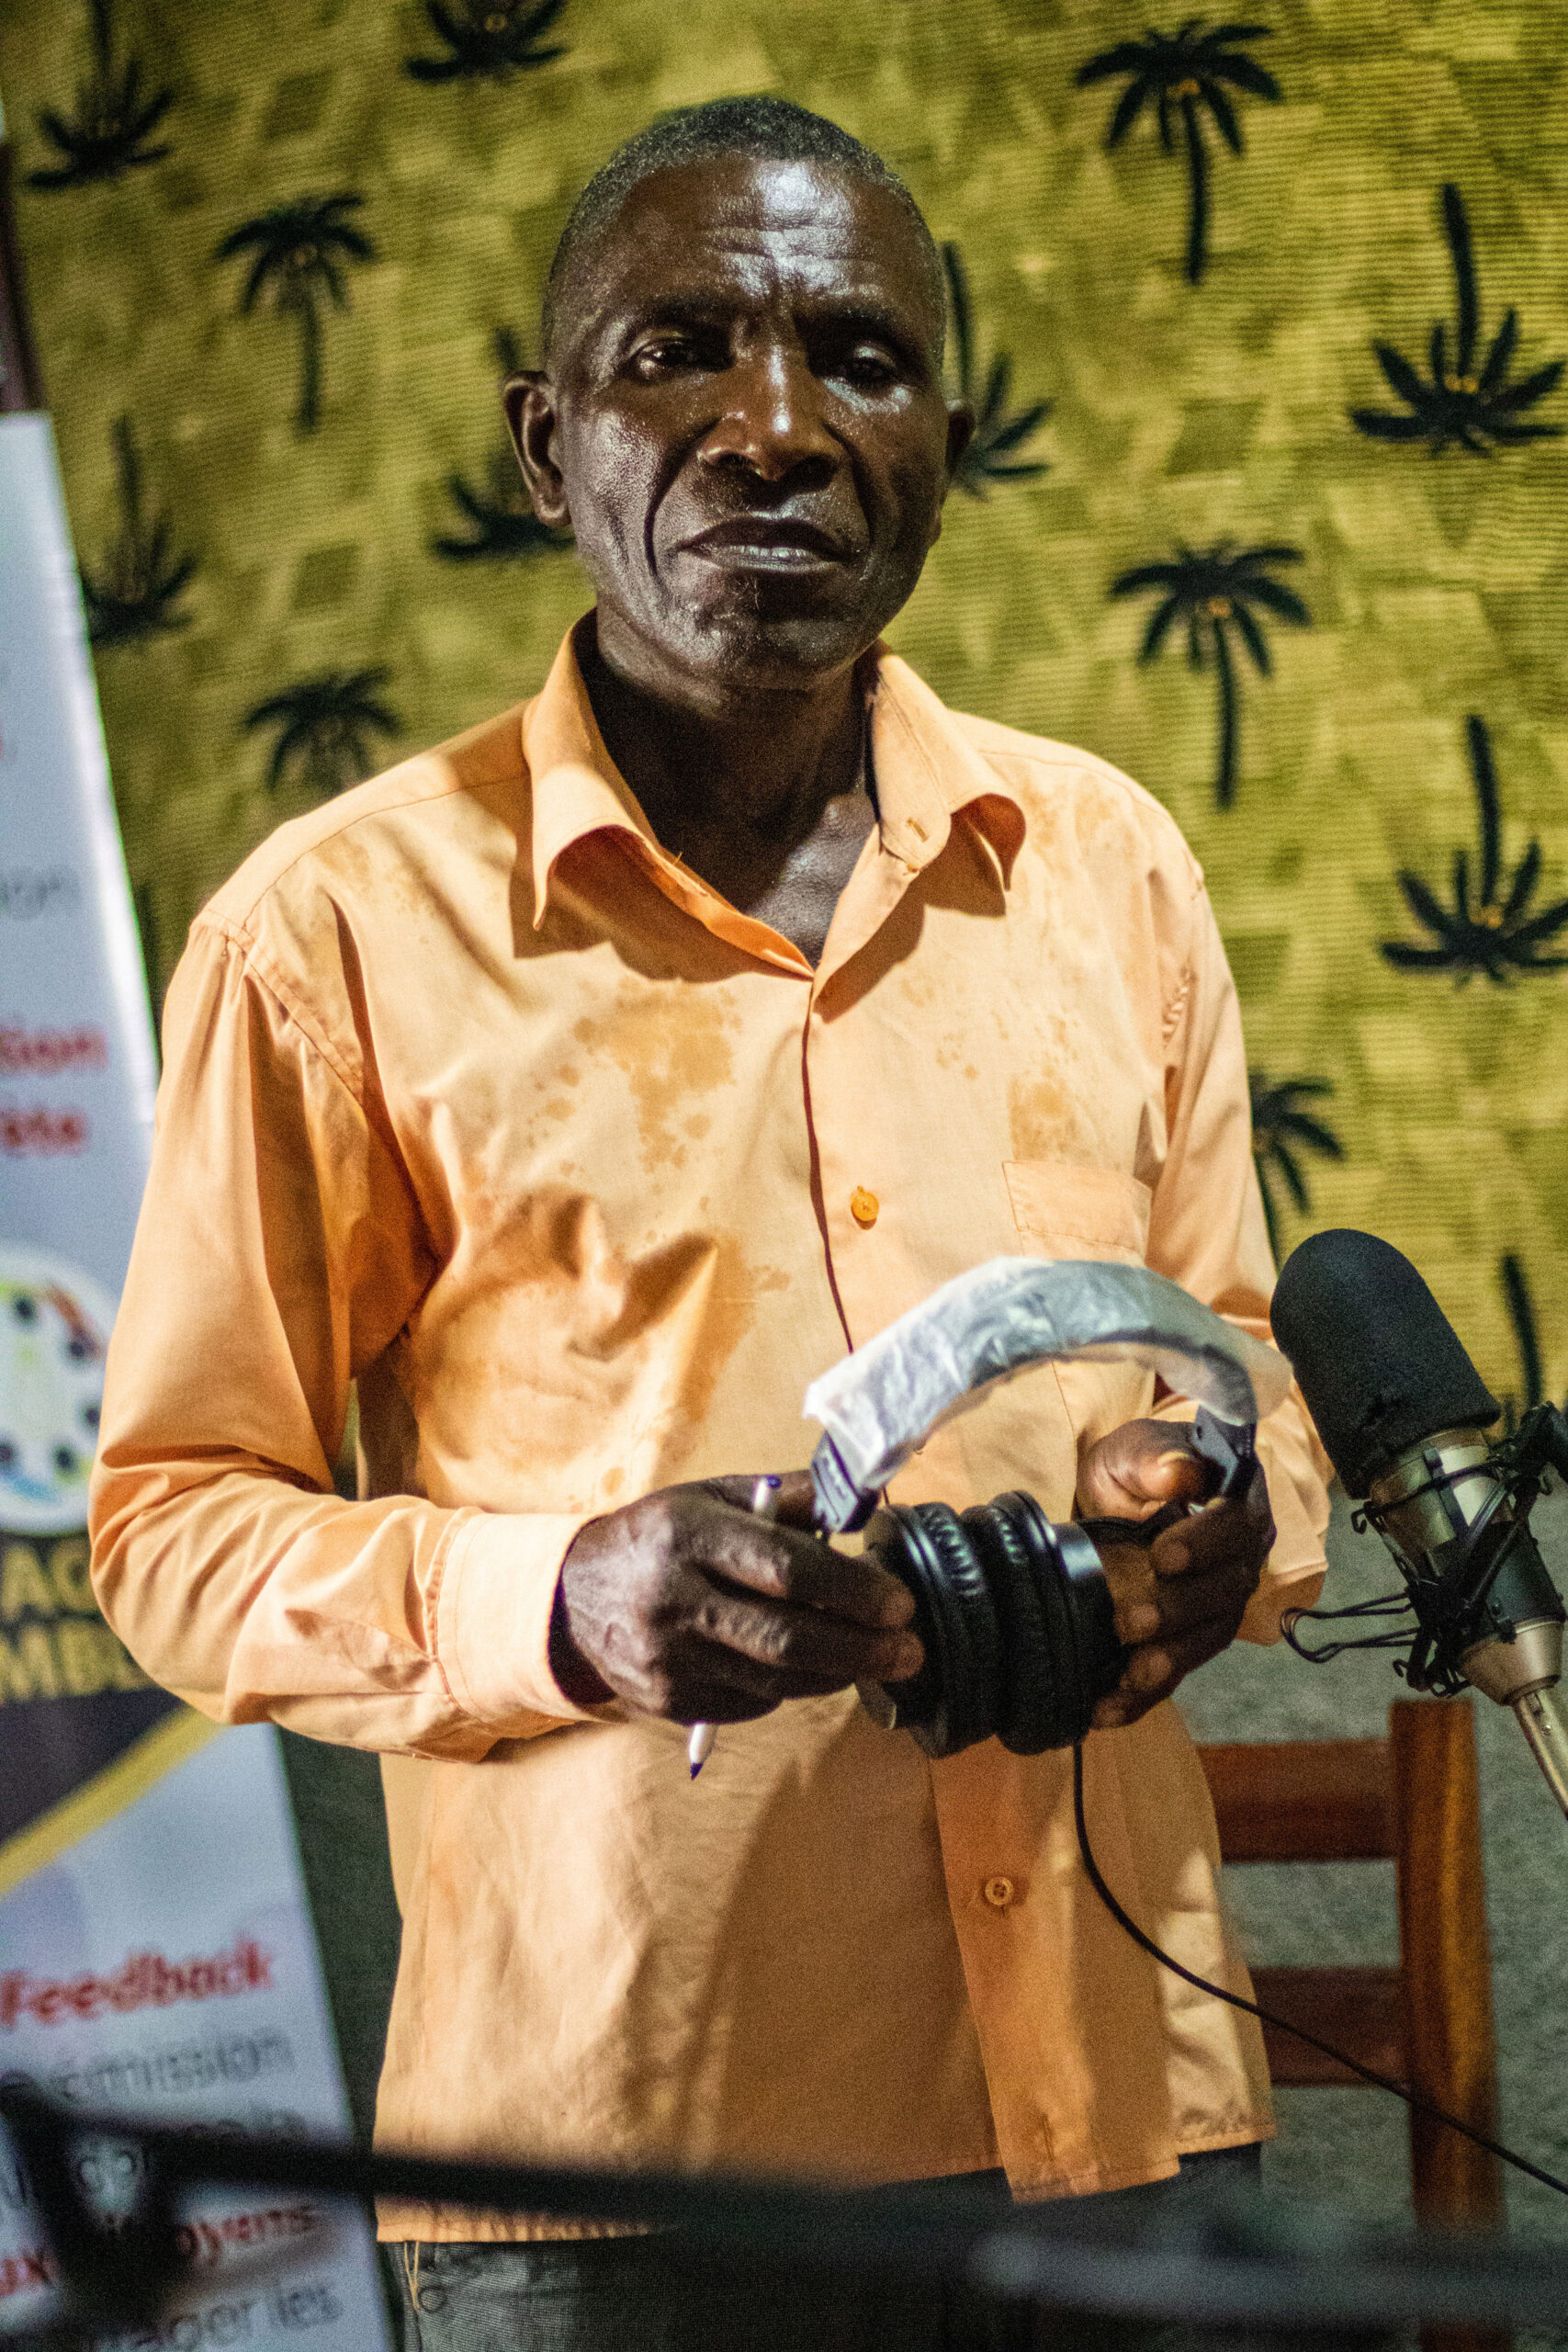 Un animateur de la radio Munku range son casque après une émission, dans le territoire de Mbakana en République démocratique du Congo. © Justin Makangara / Fondation Hirondelle.